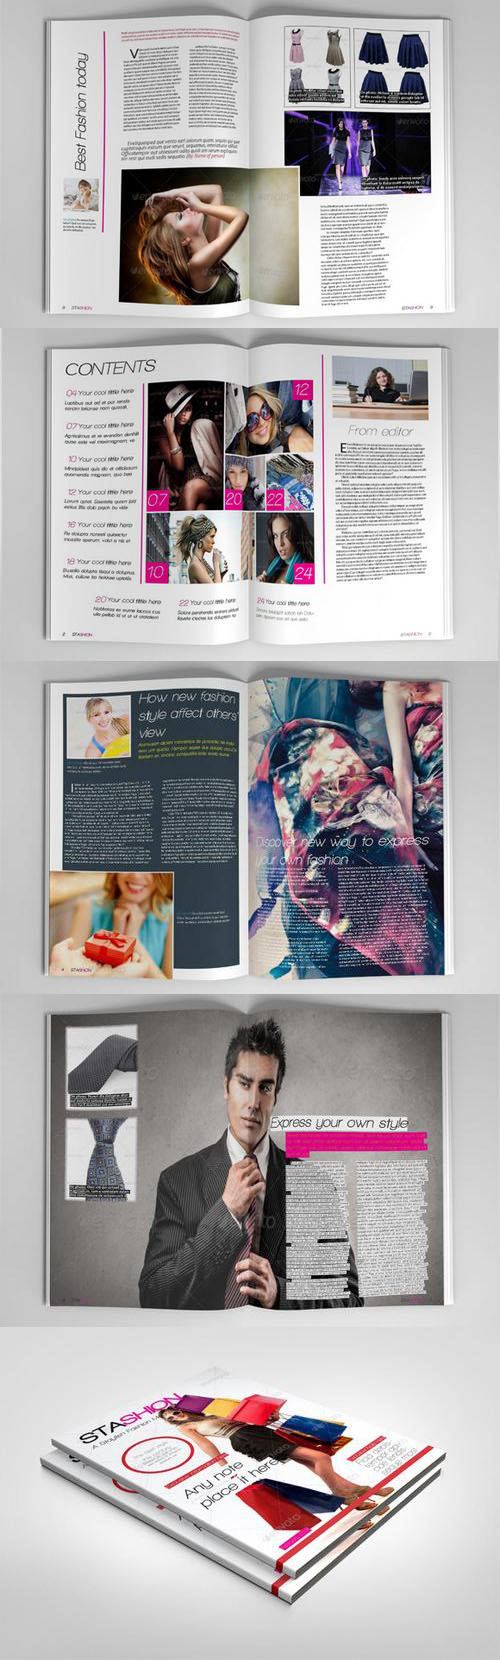 CM - Stylish Fashion Magazine 45485